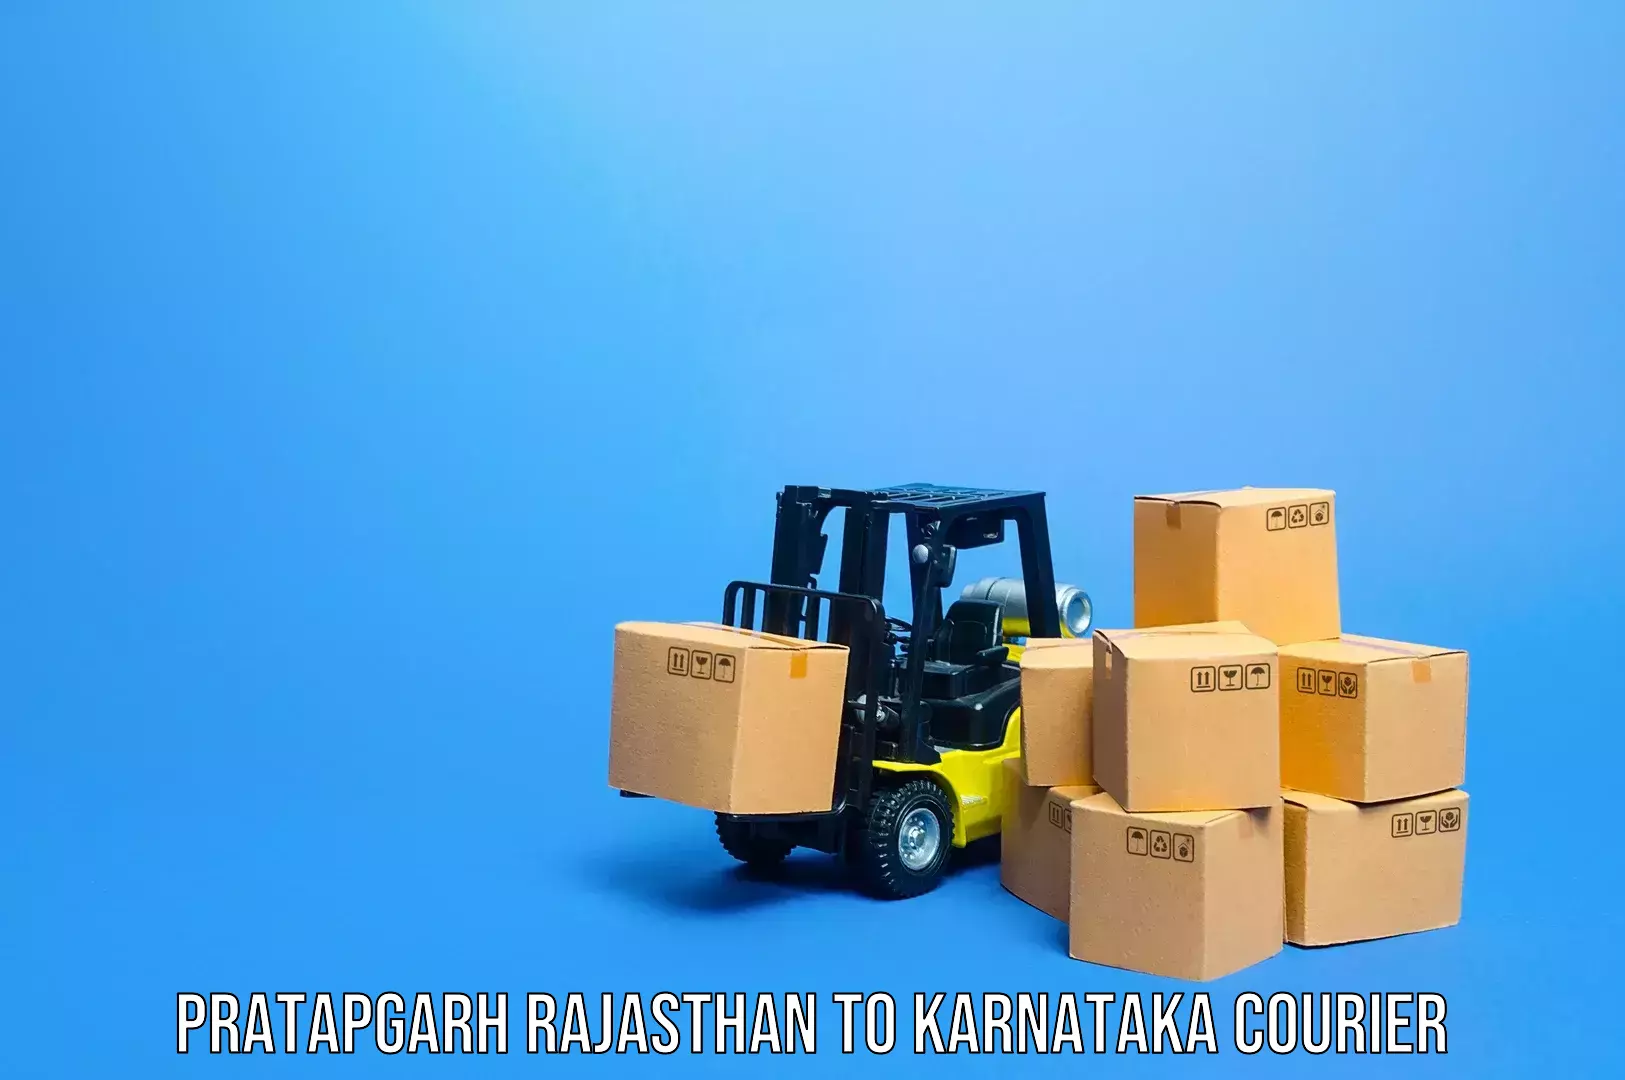 Baggage shipping experts Pratapgarh Rajasthan to Tavarekere